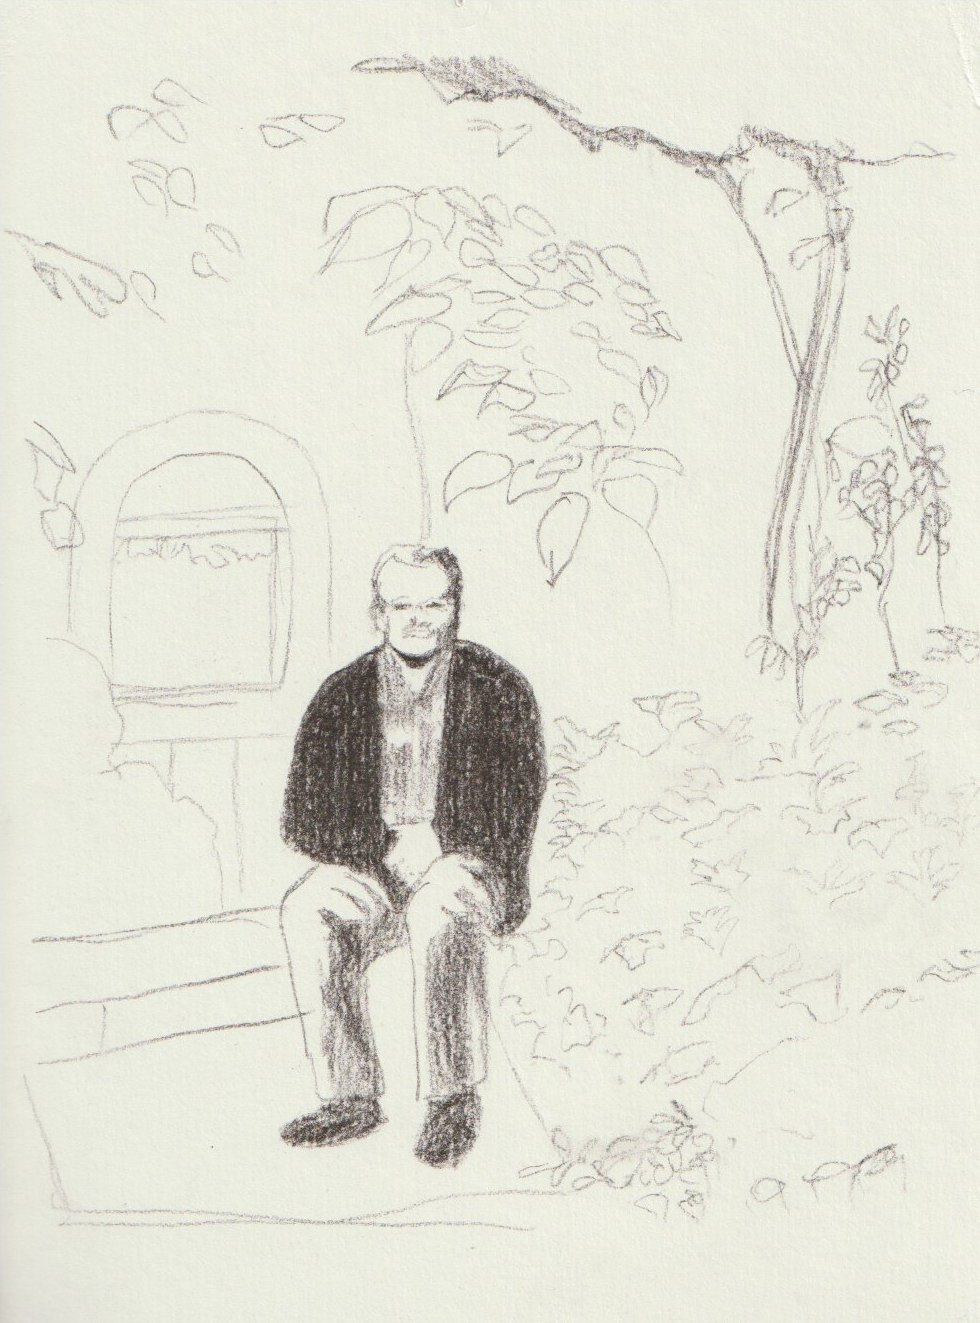 'Abuelo en su jardín' ('Grandfather in his garden')